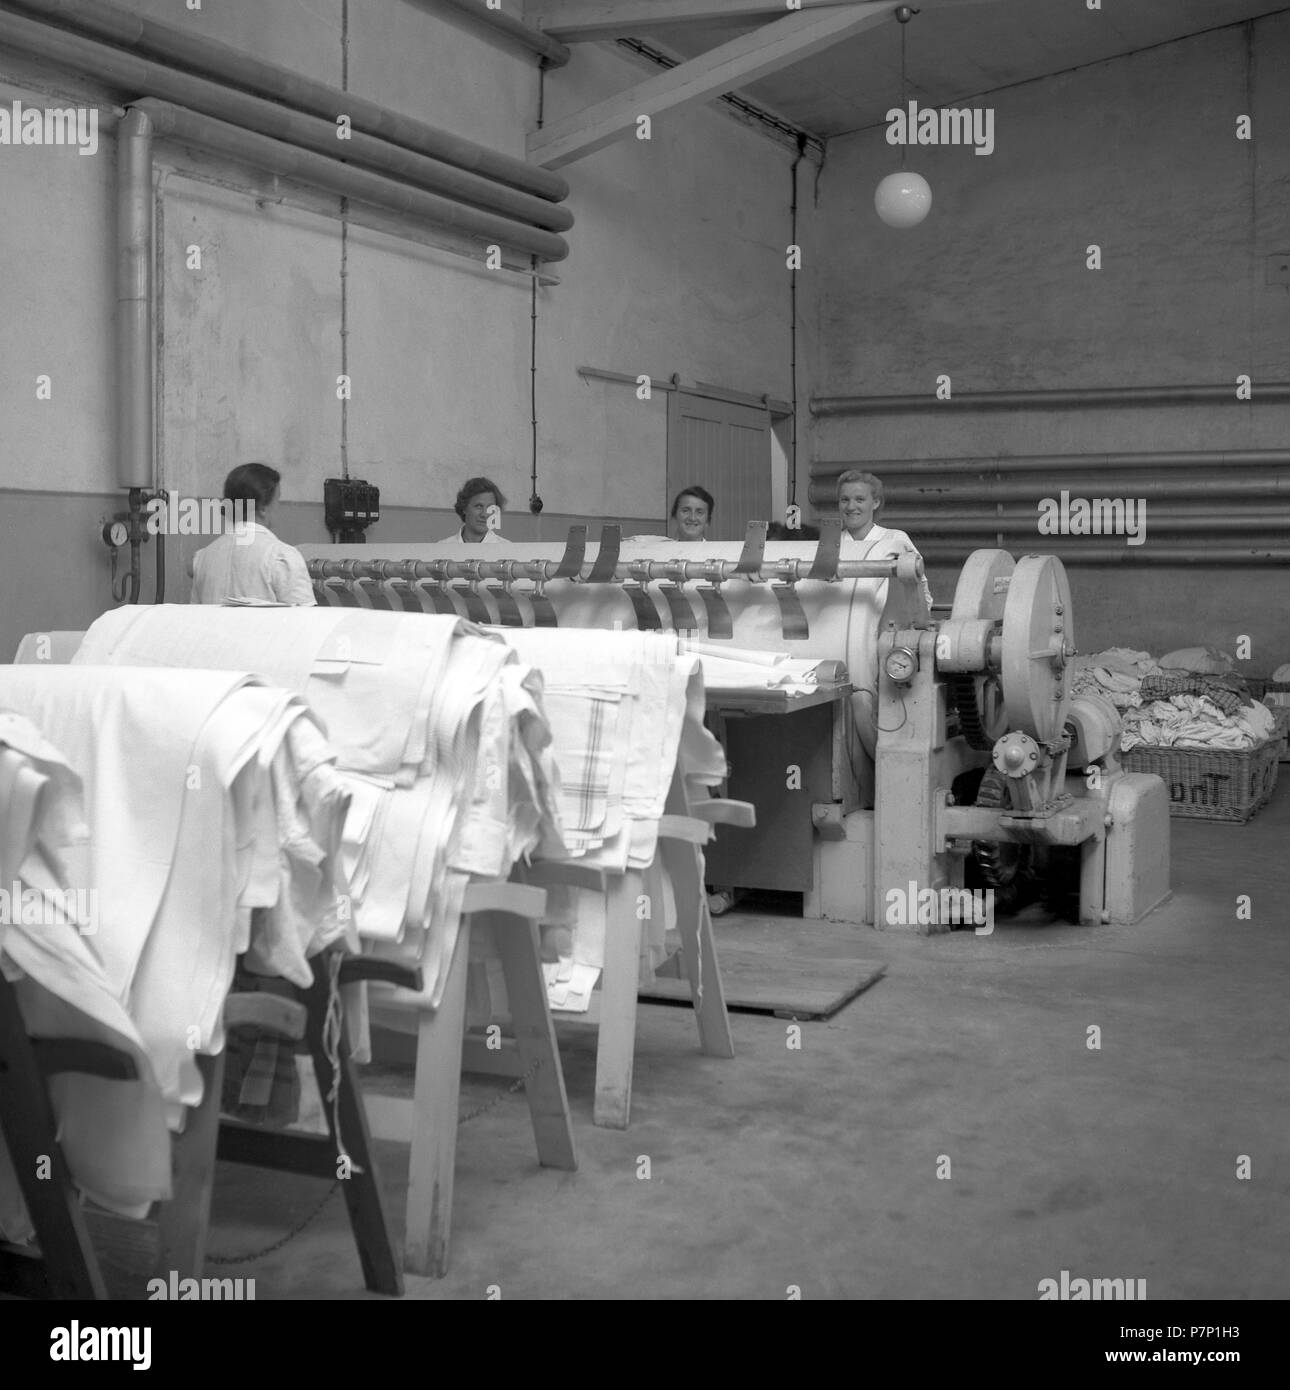 Les femmes qui travaillent sur une machine de tissage courbure autour de 1950, Freiburg, Allemagne Banque D'Images